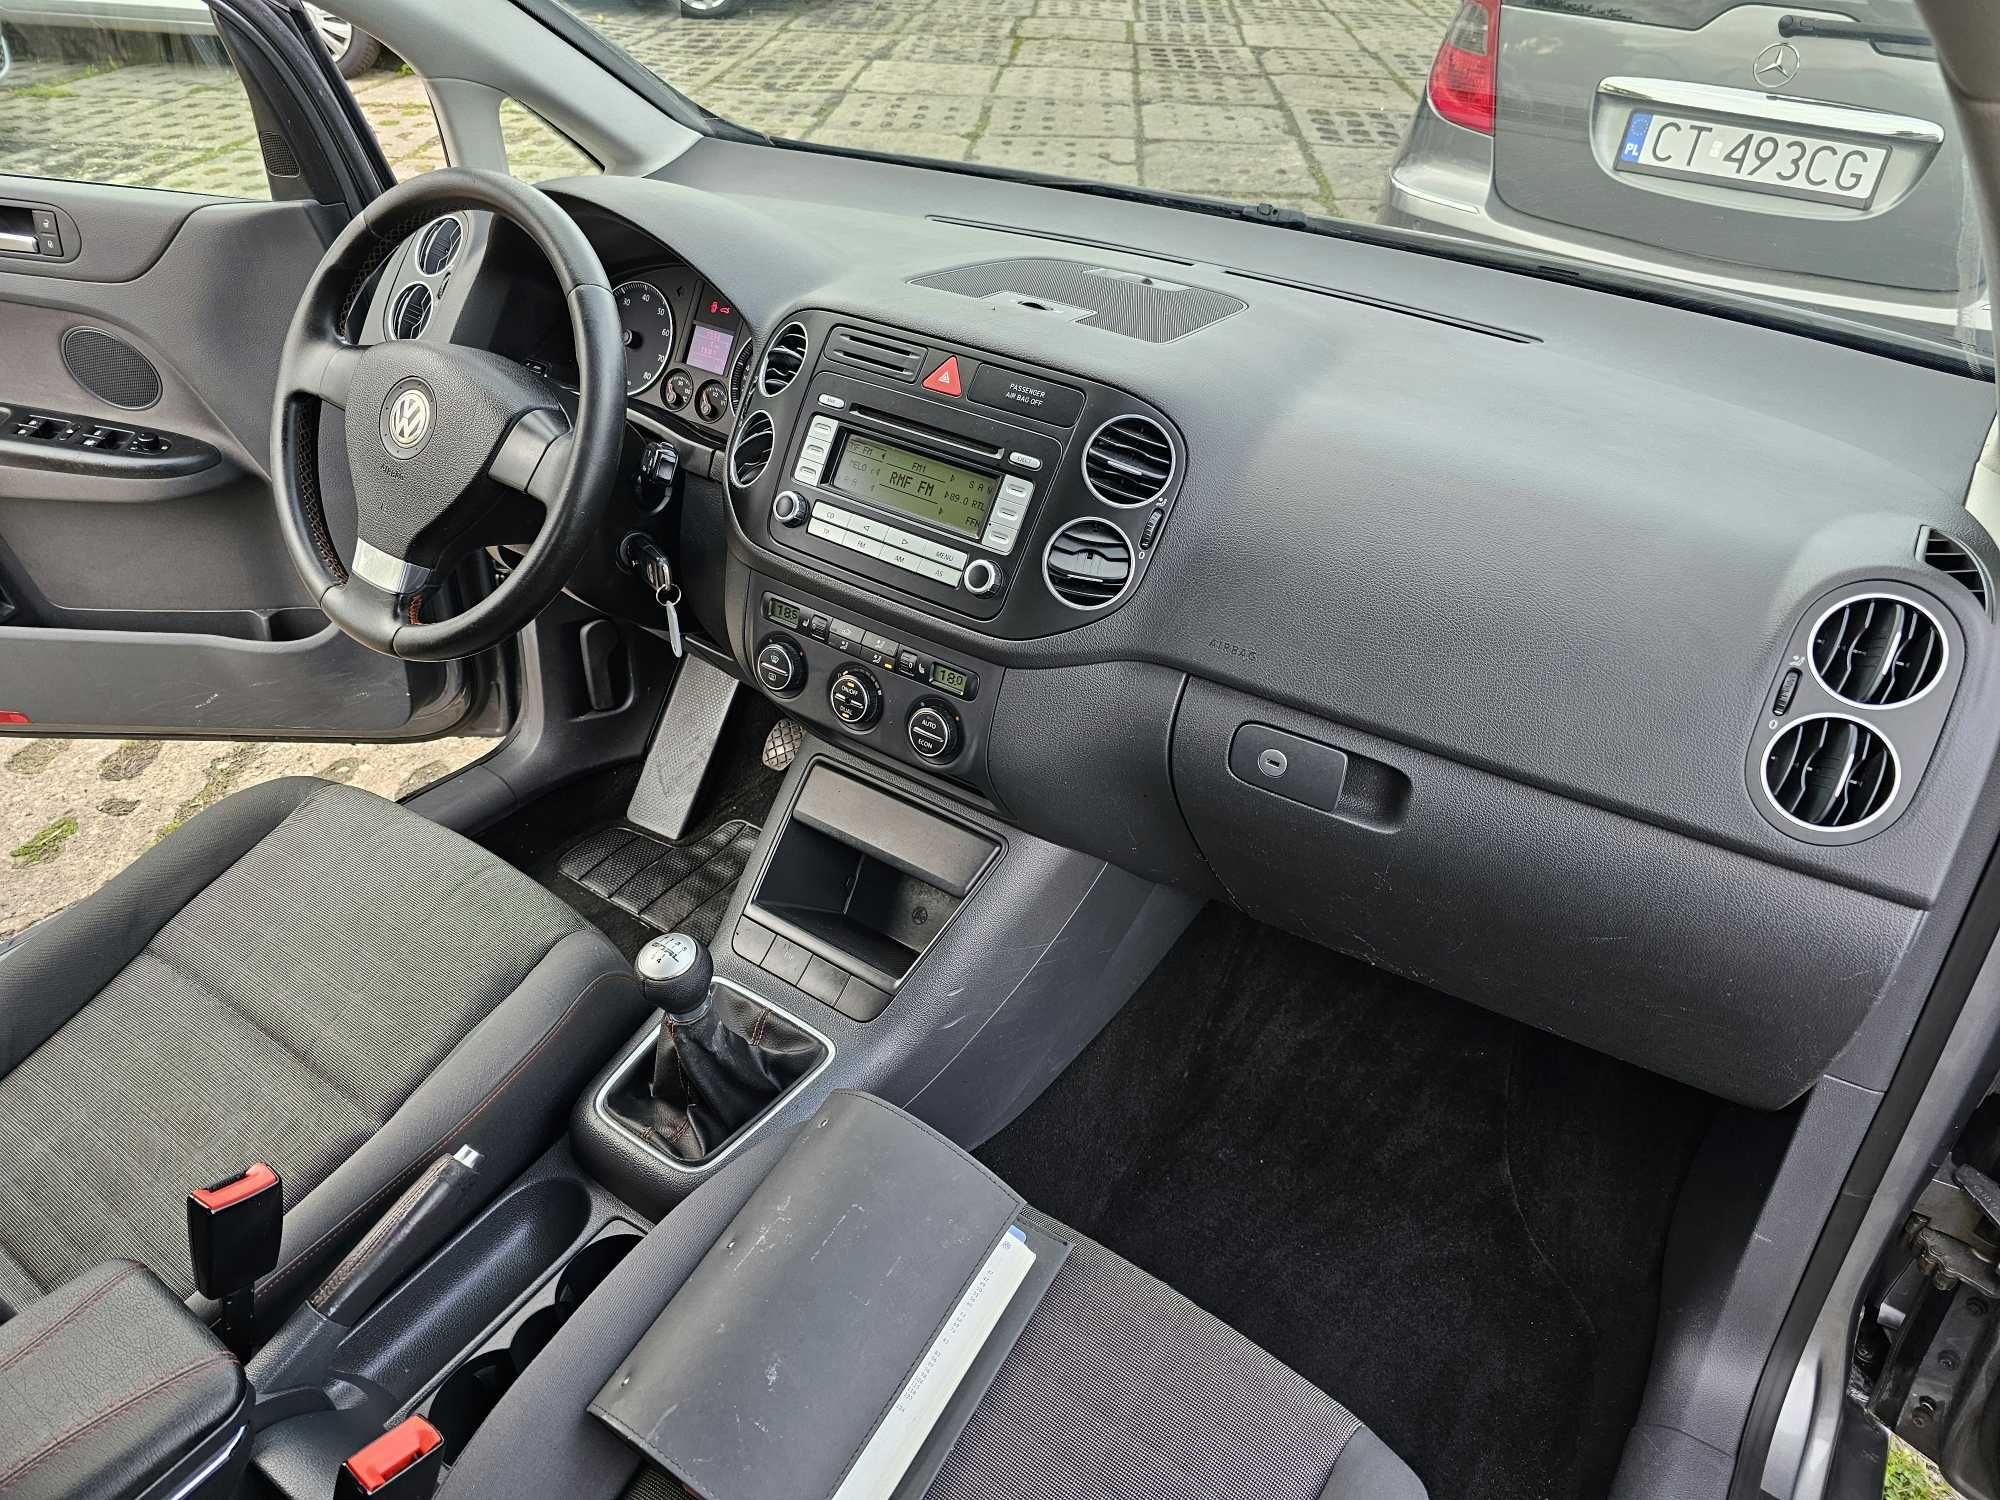 VW Golf 5 V PLUS + GORAL 2006 rok 1,6 MPI 5 d 203300 km ZAREJESTROWANY